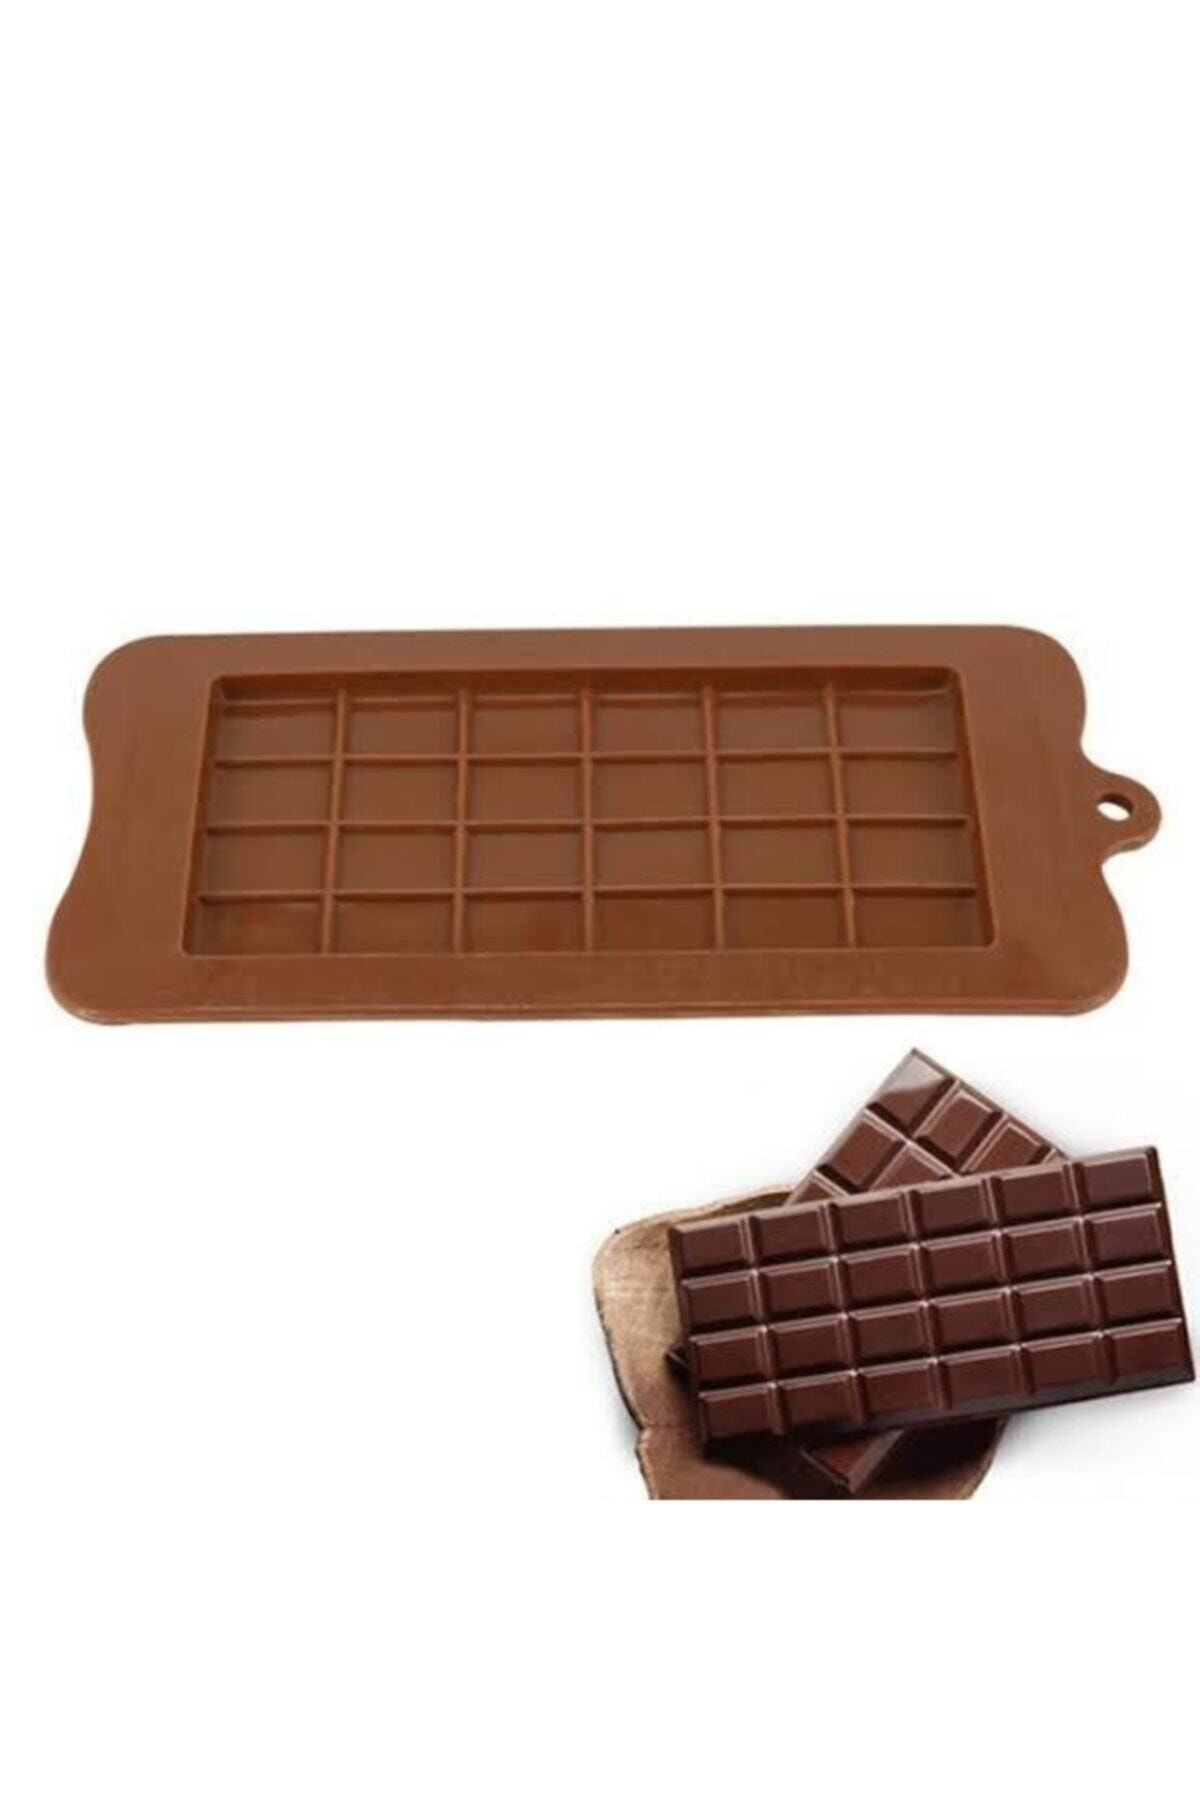 SilikonKalıpSepeti Silikon Tablet Çikolata Kalıbı